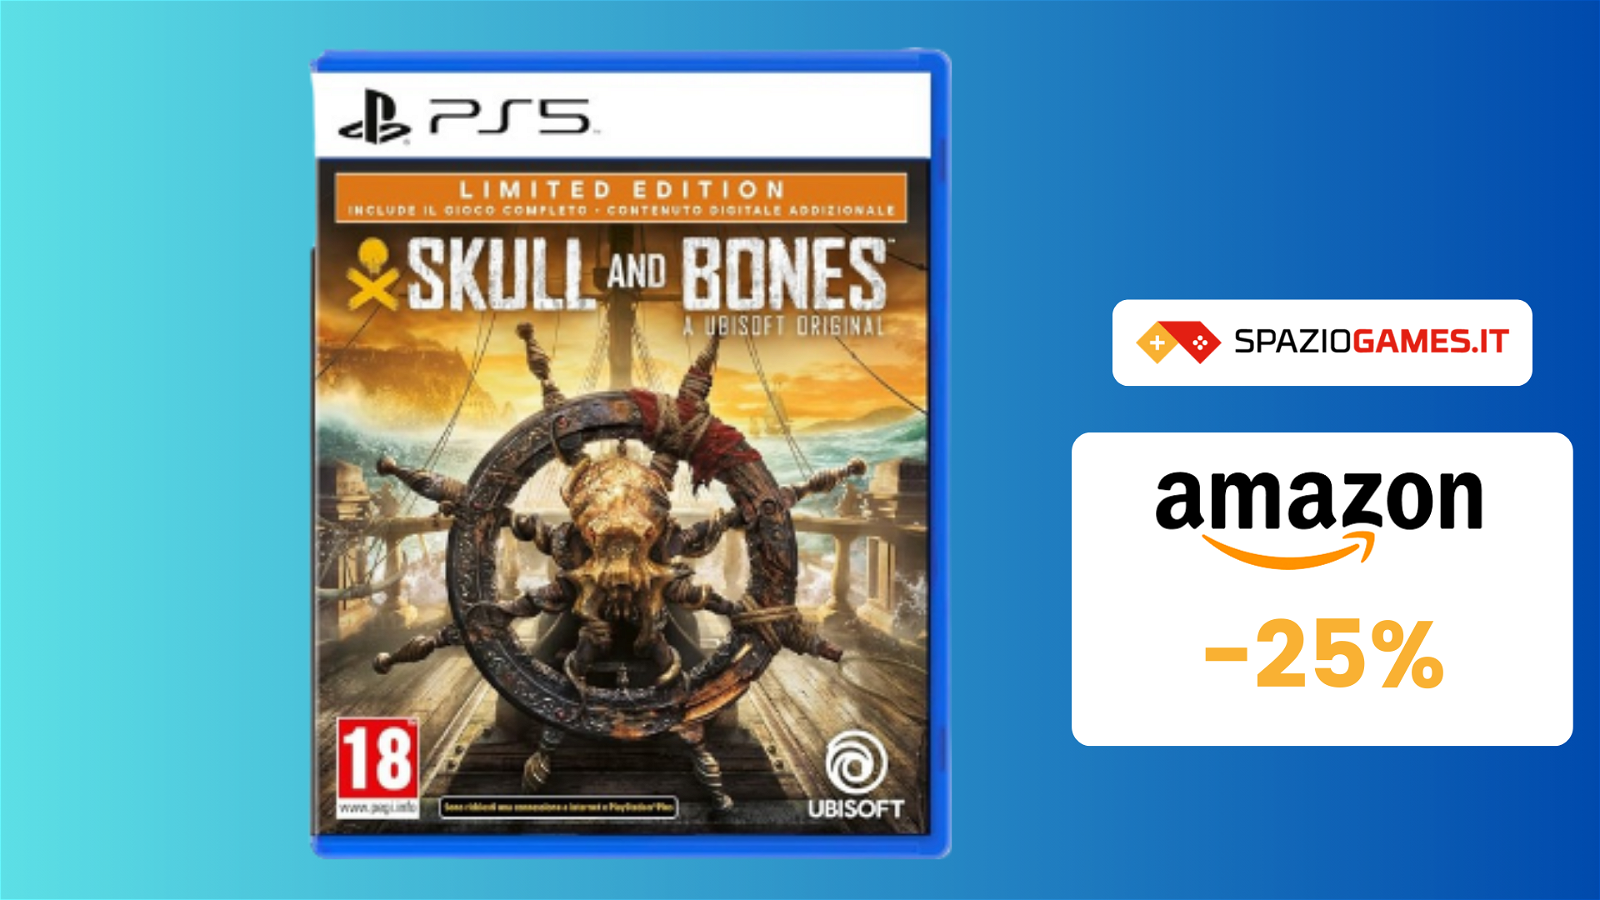 Skull & Bones - Limited Edition per PS5 a SOLI 60€! -25%!